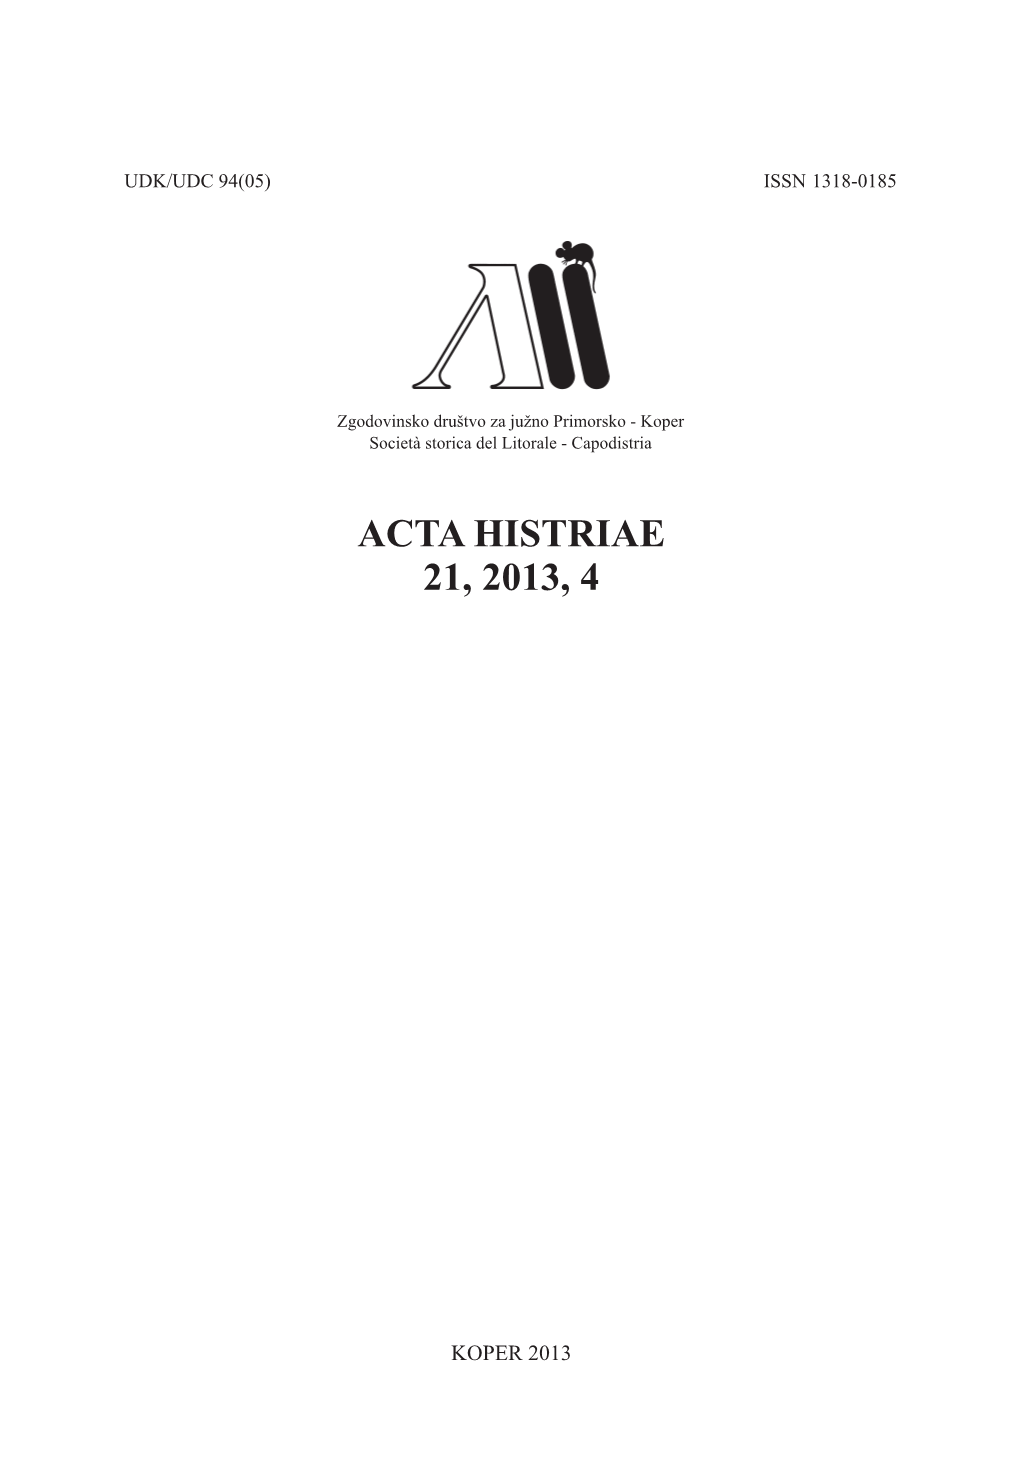 Acta Histriae 21, 2013, 4